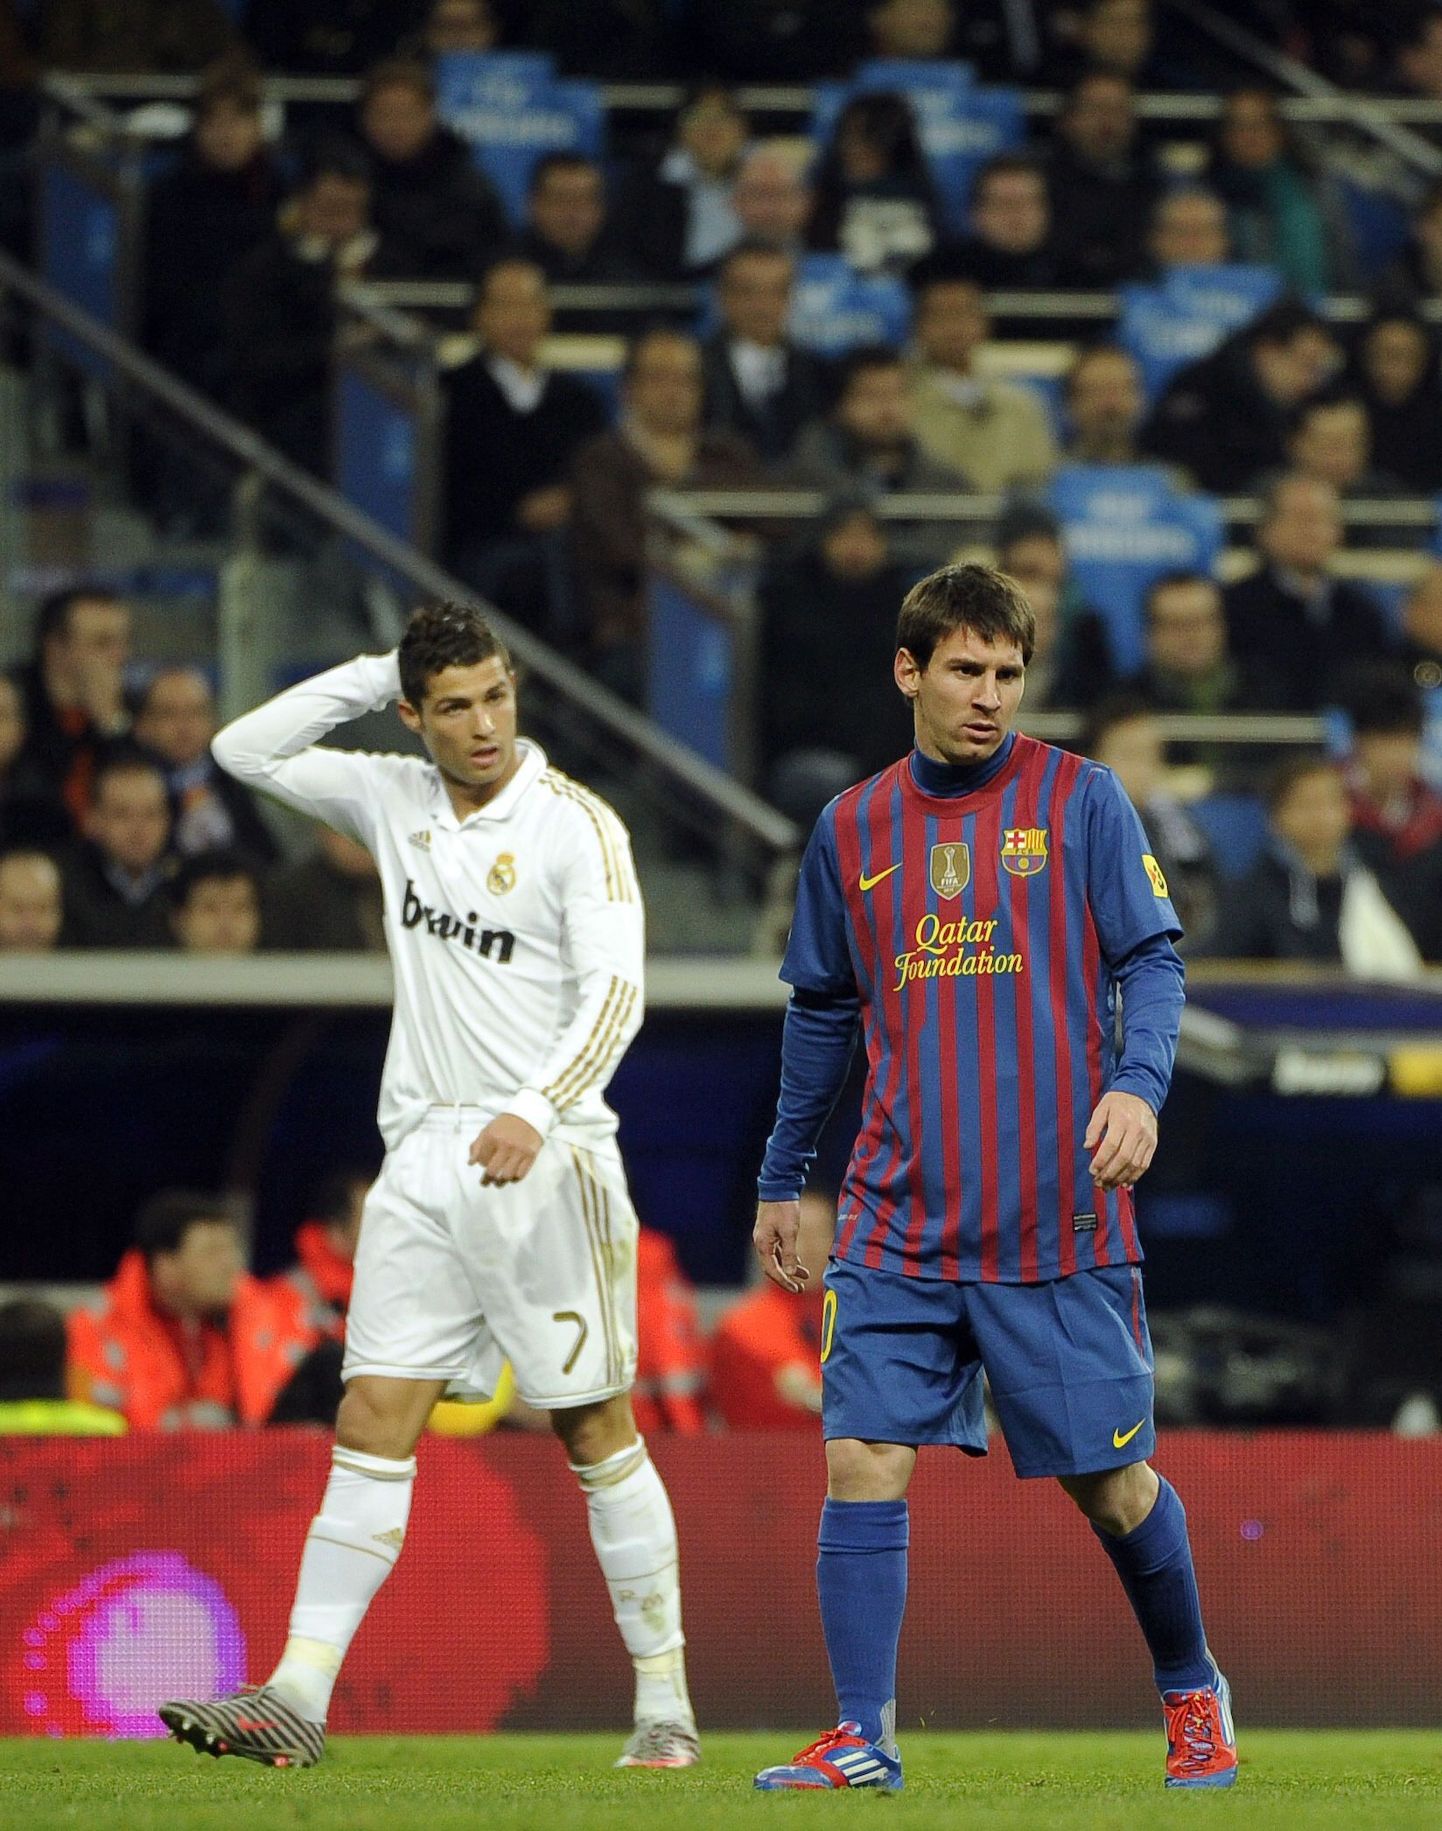 Ronaldo ja Messi jätkavad rekordite purustamist. Mõlemad mehed on sellel hooajal löönud liigas 41 väravat.